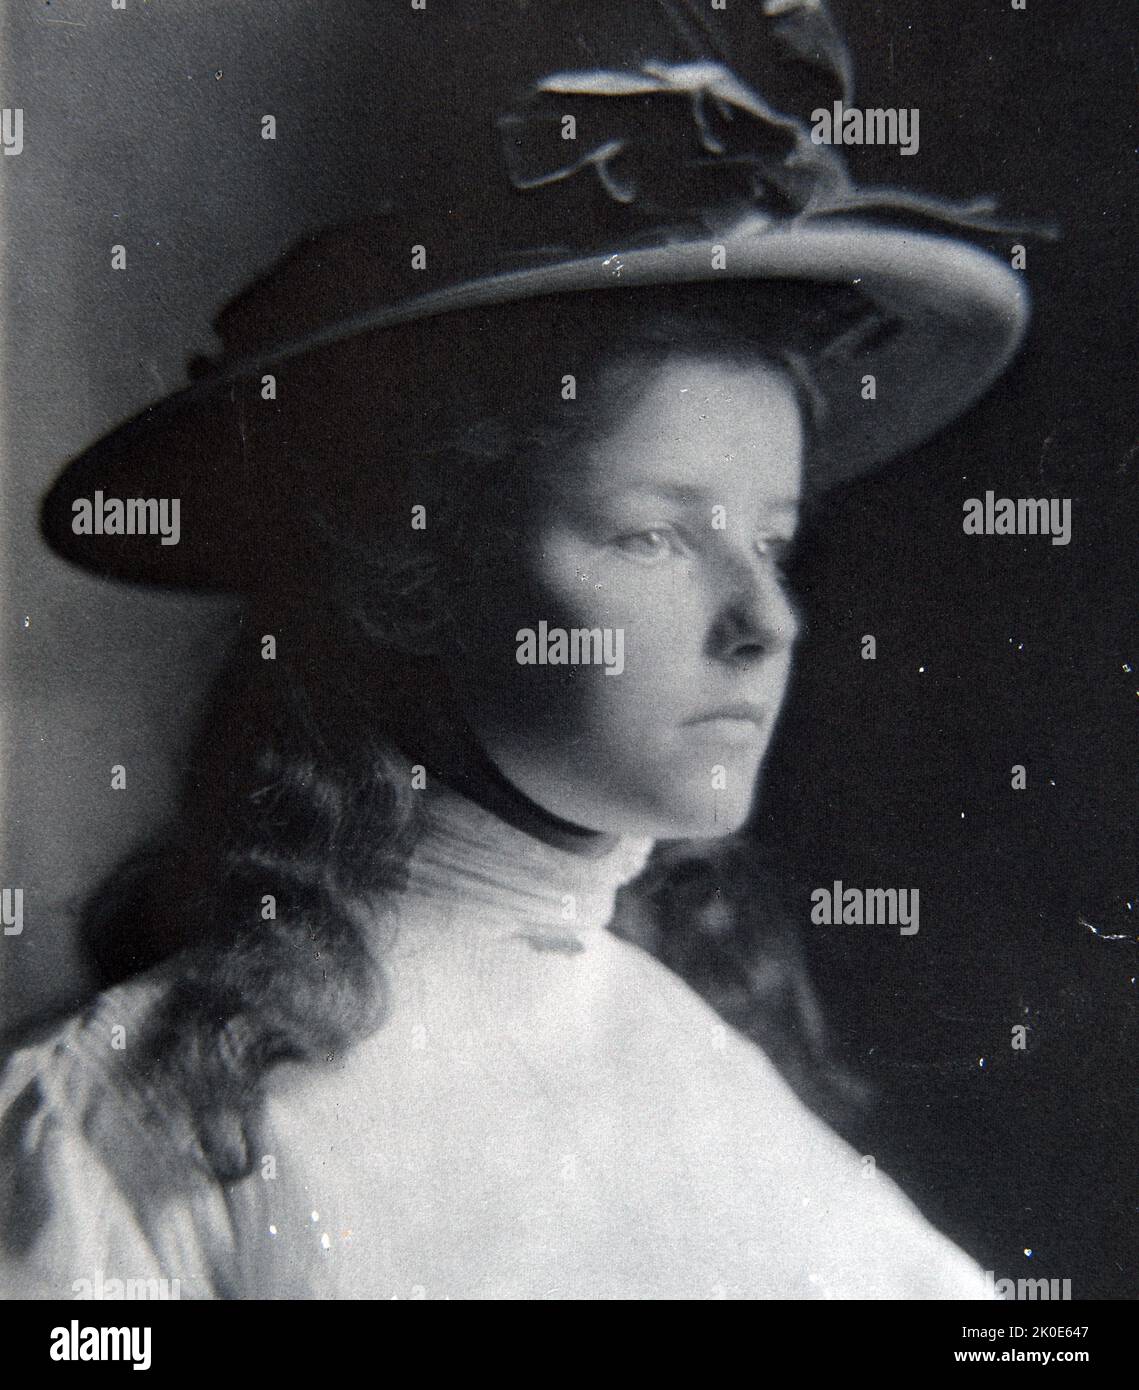 Peggy Lee en robe blanche, 1905, par Fred Holland Day (1864--1933), photographe et éditeur américain. Il a été éminent dans les cercles littéraires et photographiques à la fin du 19th siècle et a été un grand Pictorialiste. Il a été un défenseur précoce et vocal de l'acceptation de la photographie comme un bel art Banque D'Images